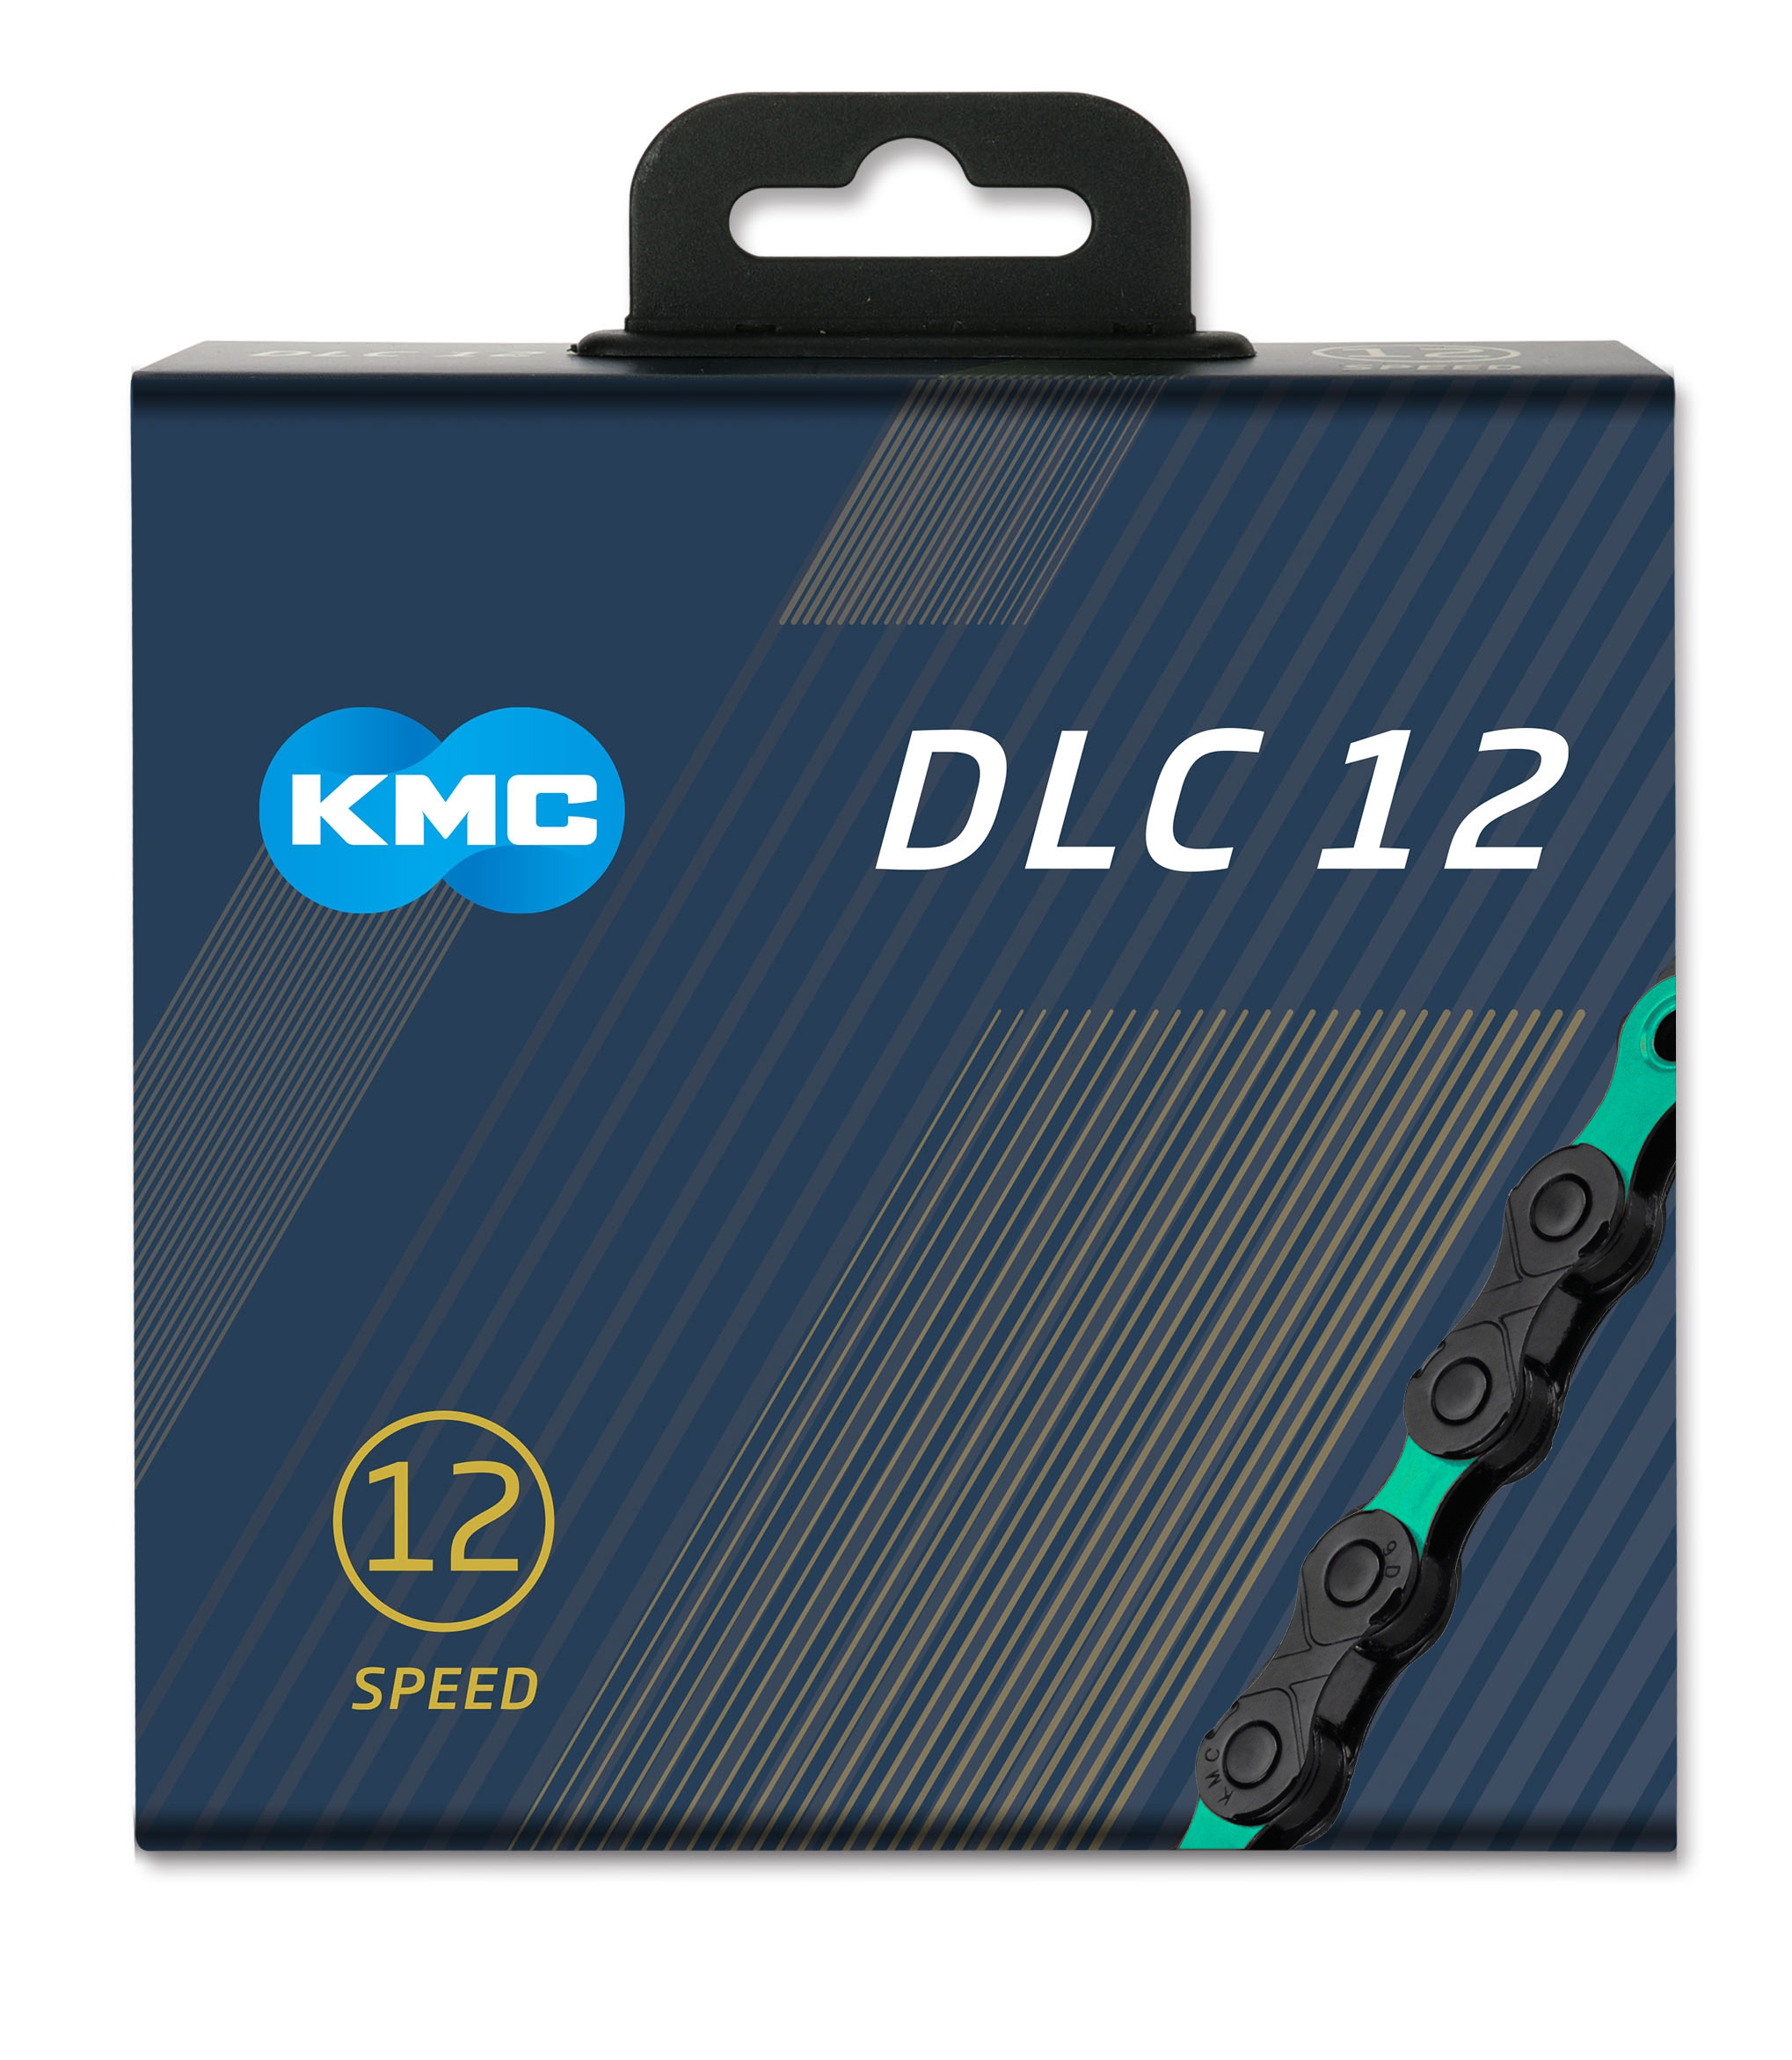 Lánc KMC DLC 12 fekete/Celeste, 12 sebesség